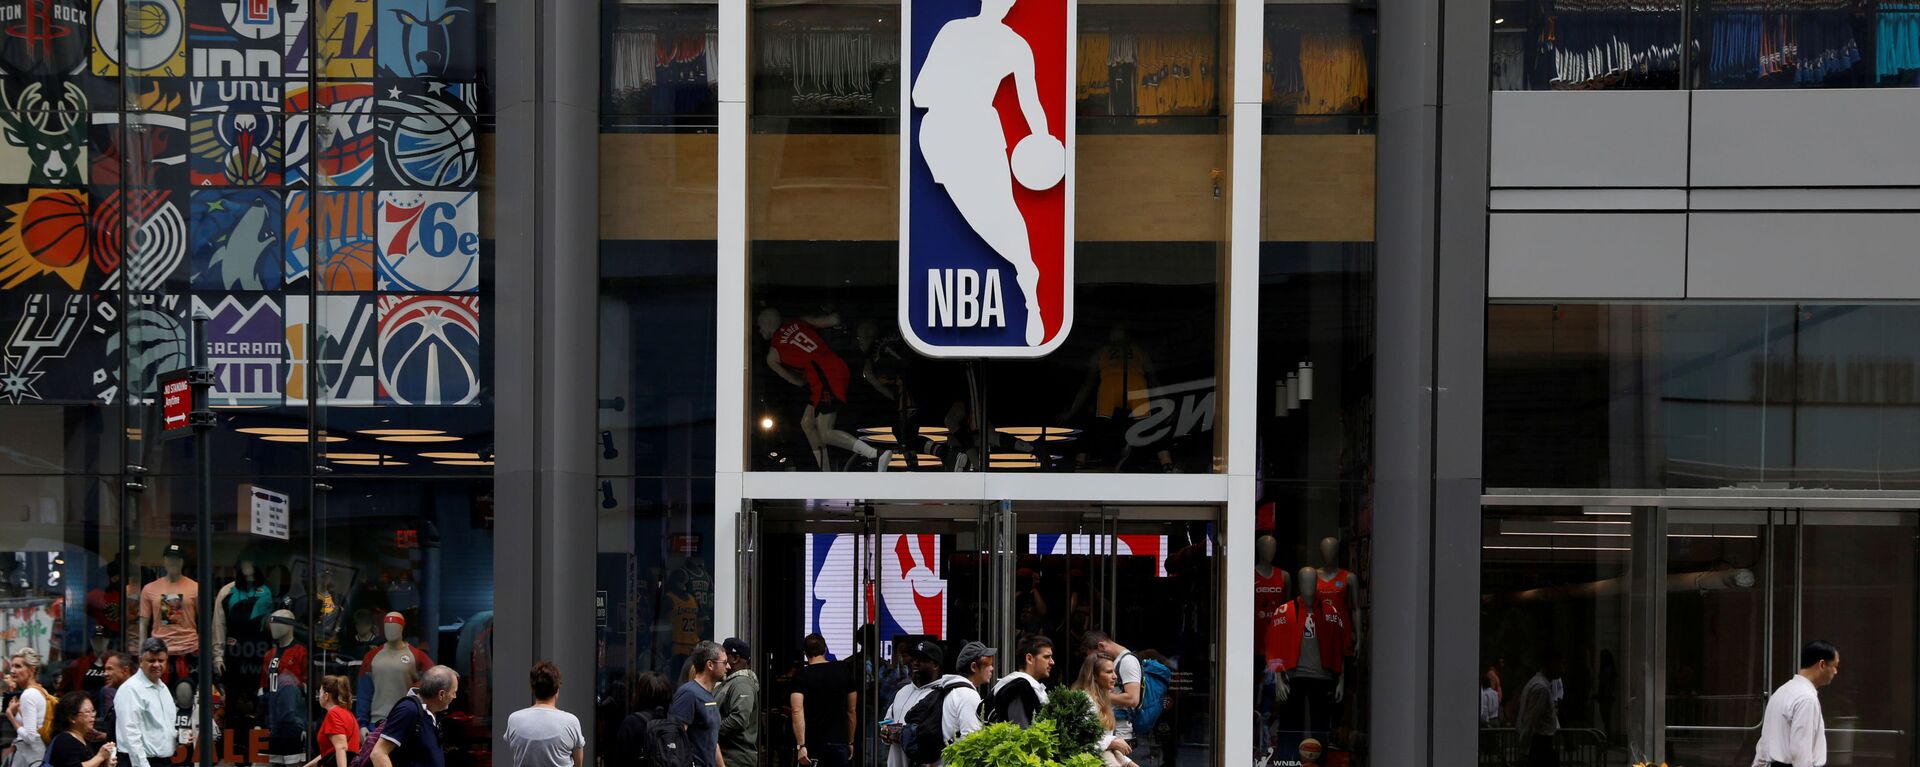 Logo của NBA phía trên lối vào cửa hàng NBA ở New York, Hoa Kỳ - Sputnik Việt Nam, 1920, 06.10.2021